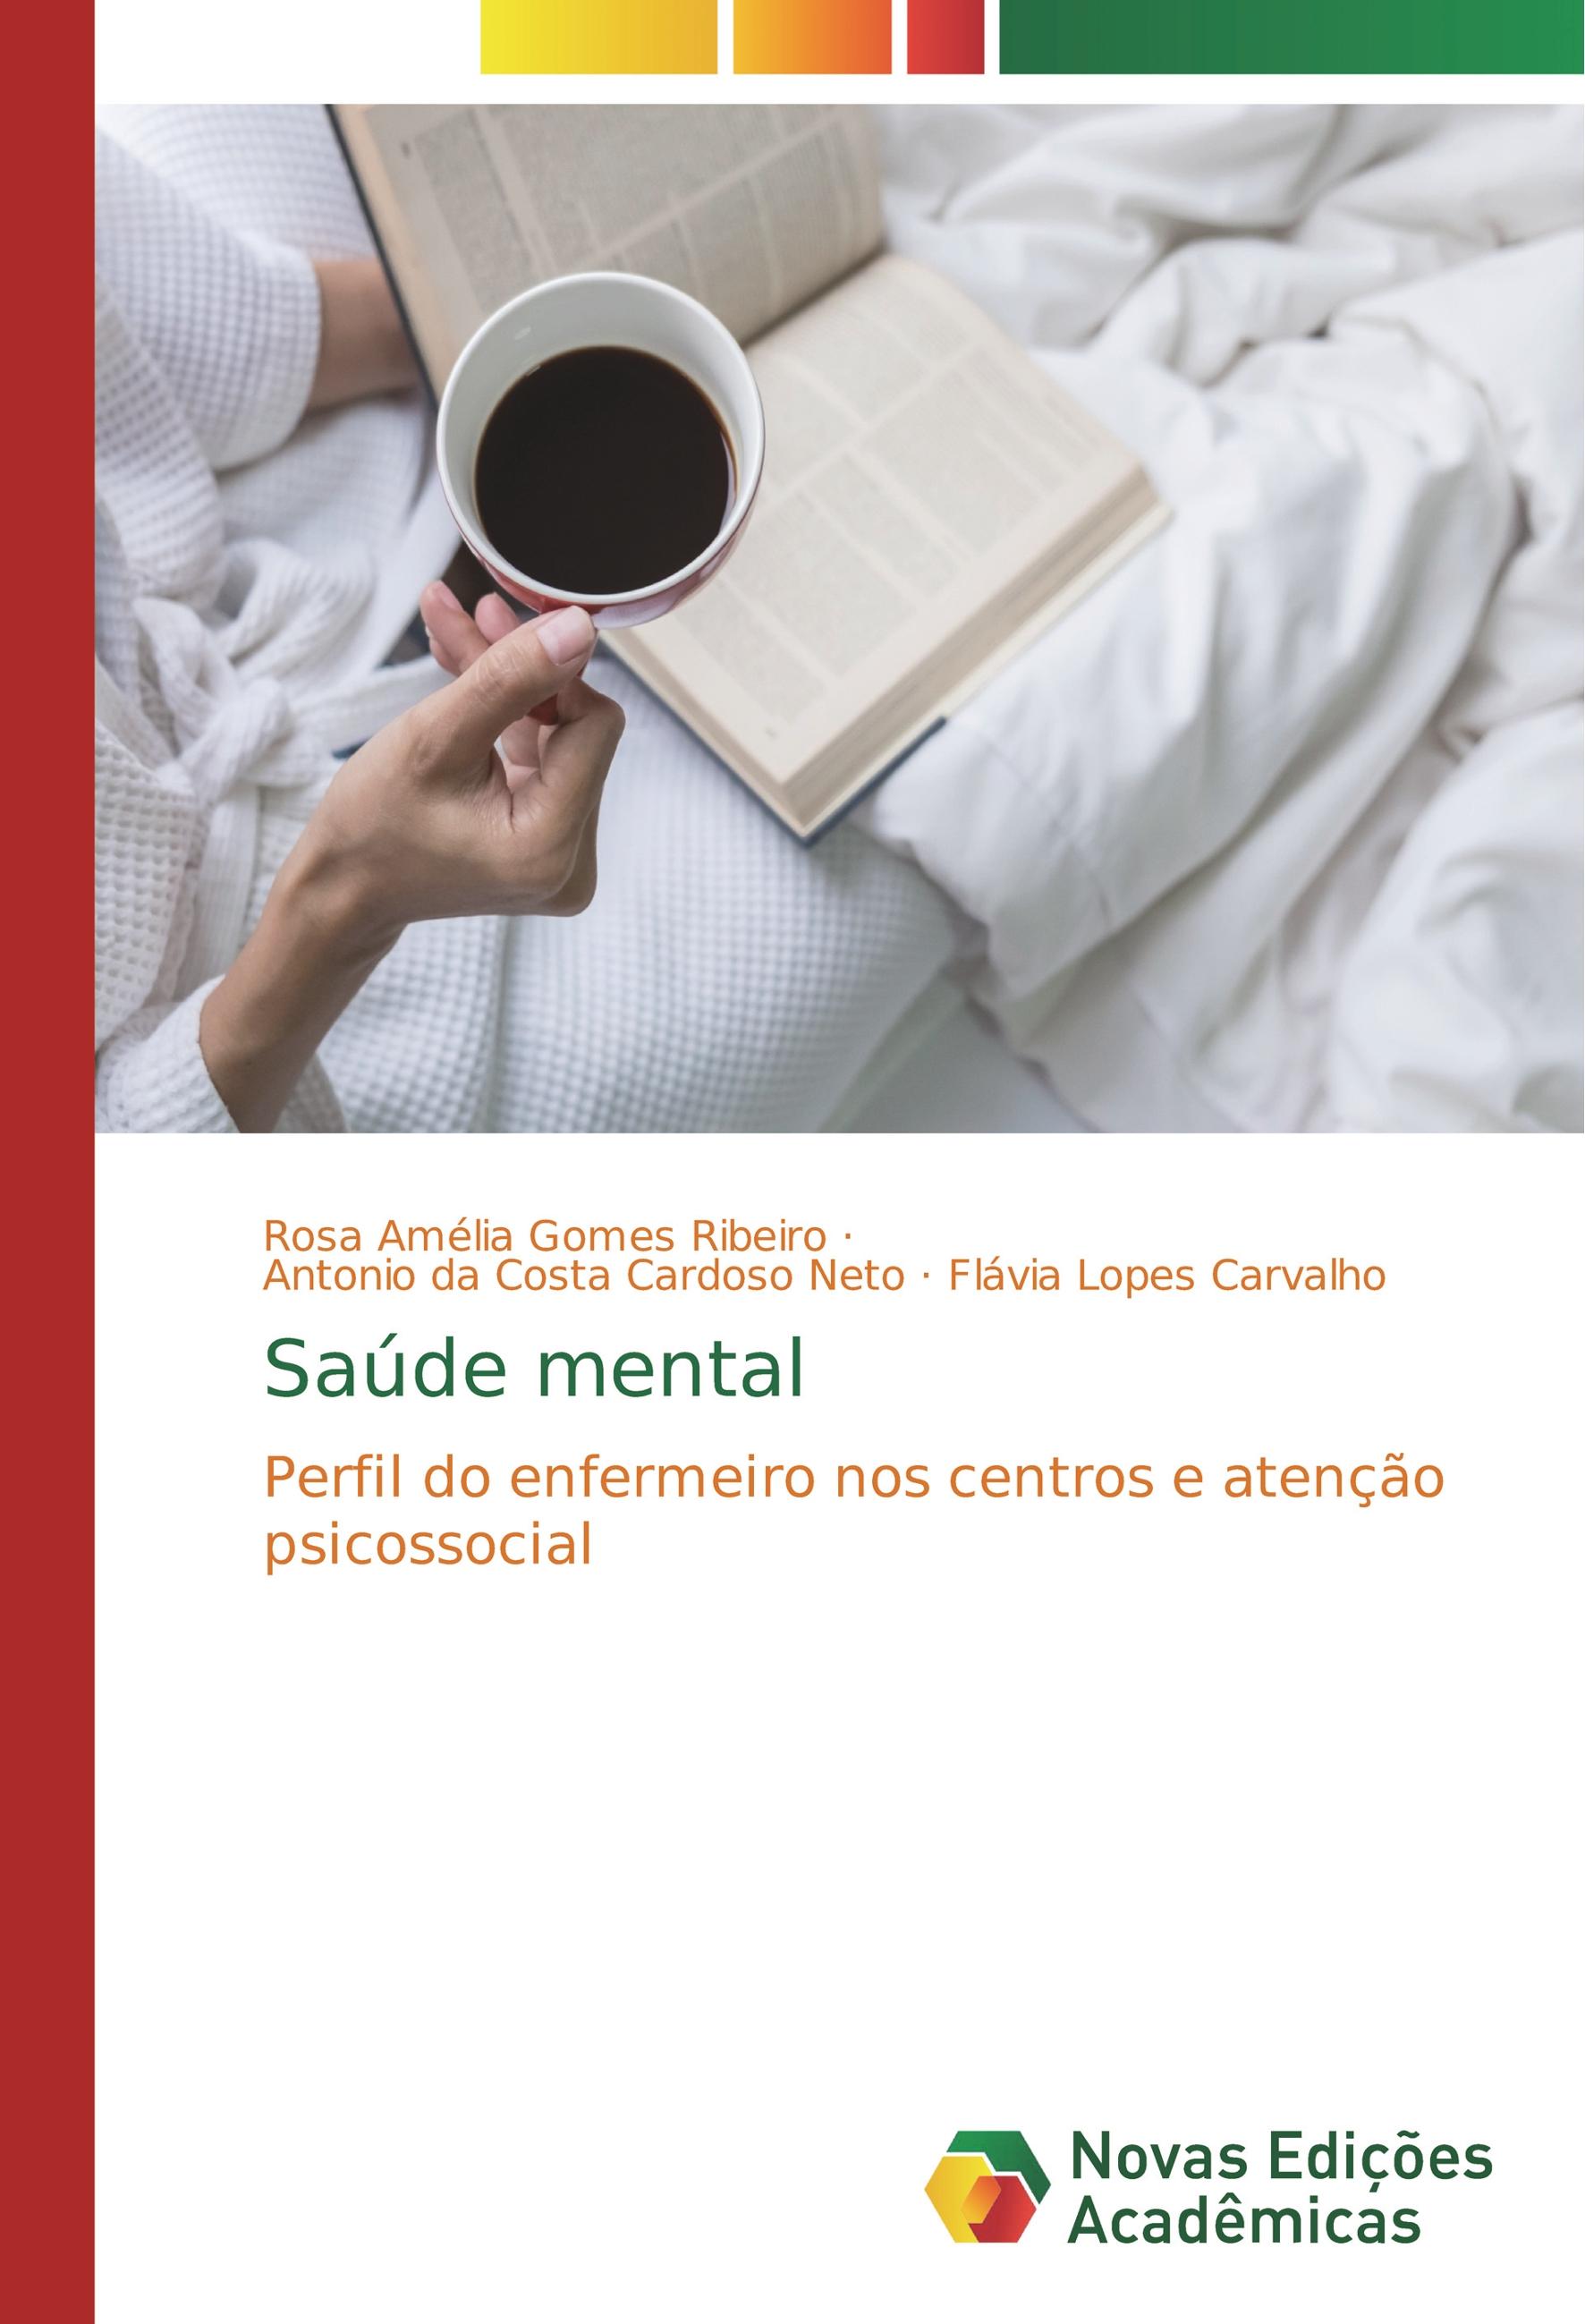 Saúde mental - Gomes Ribeiro, Rosa Amélia da Costa Cardoso Neto, Antonio Lopes Carvalho, Flávia